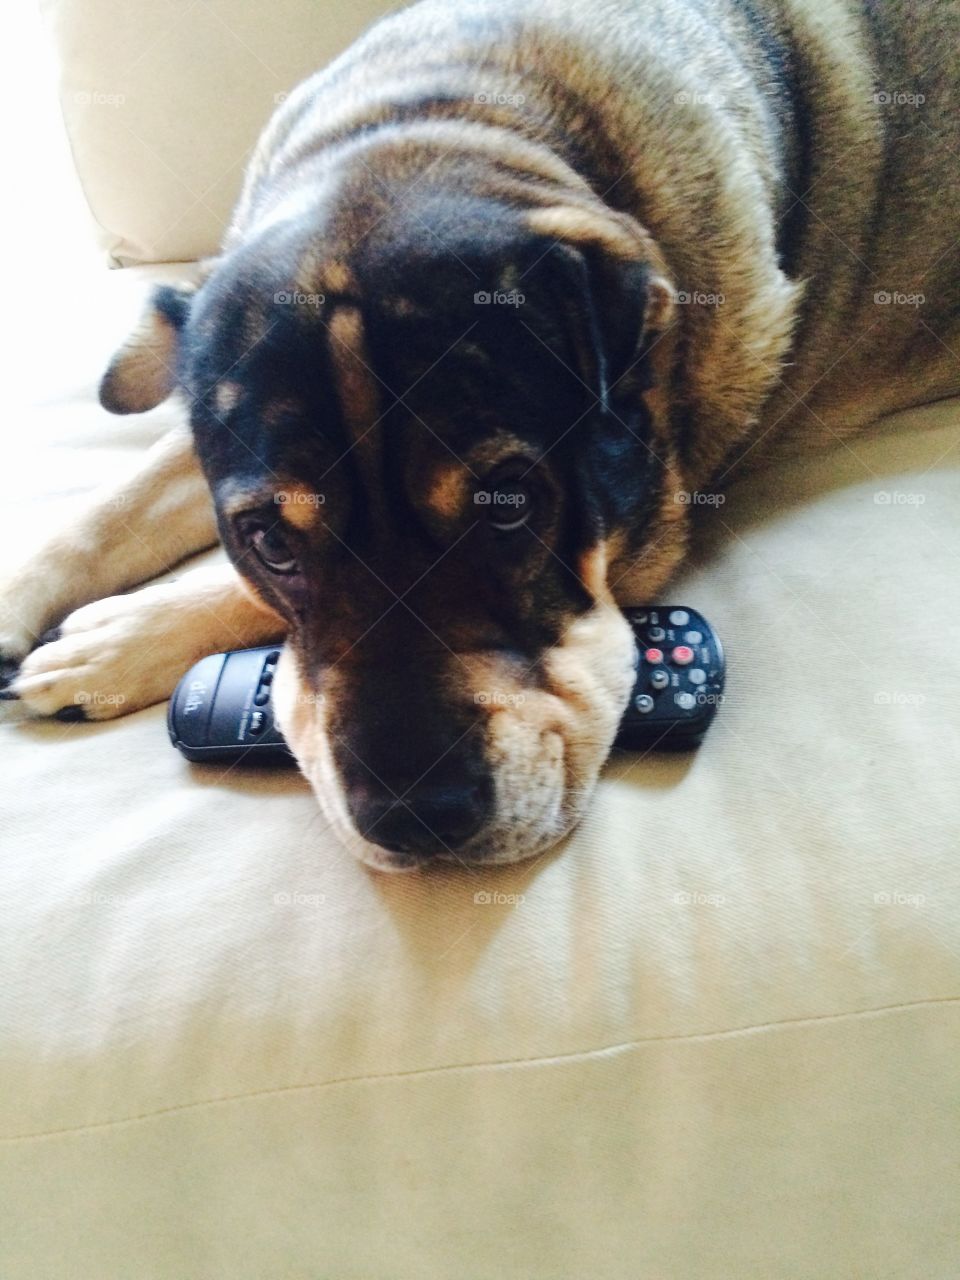 Dog has remote